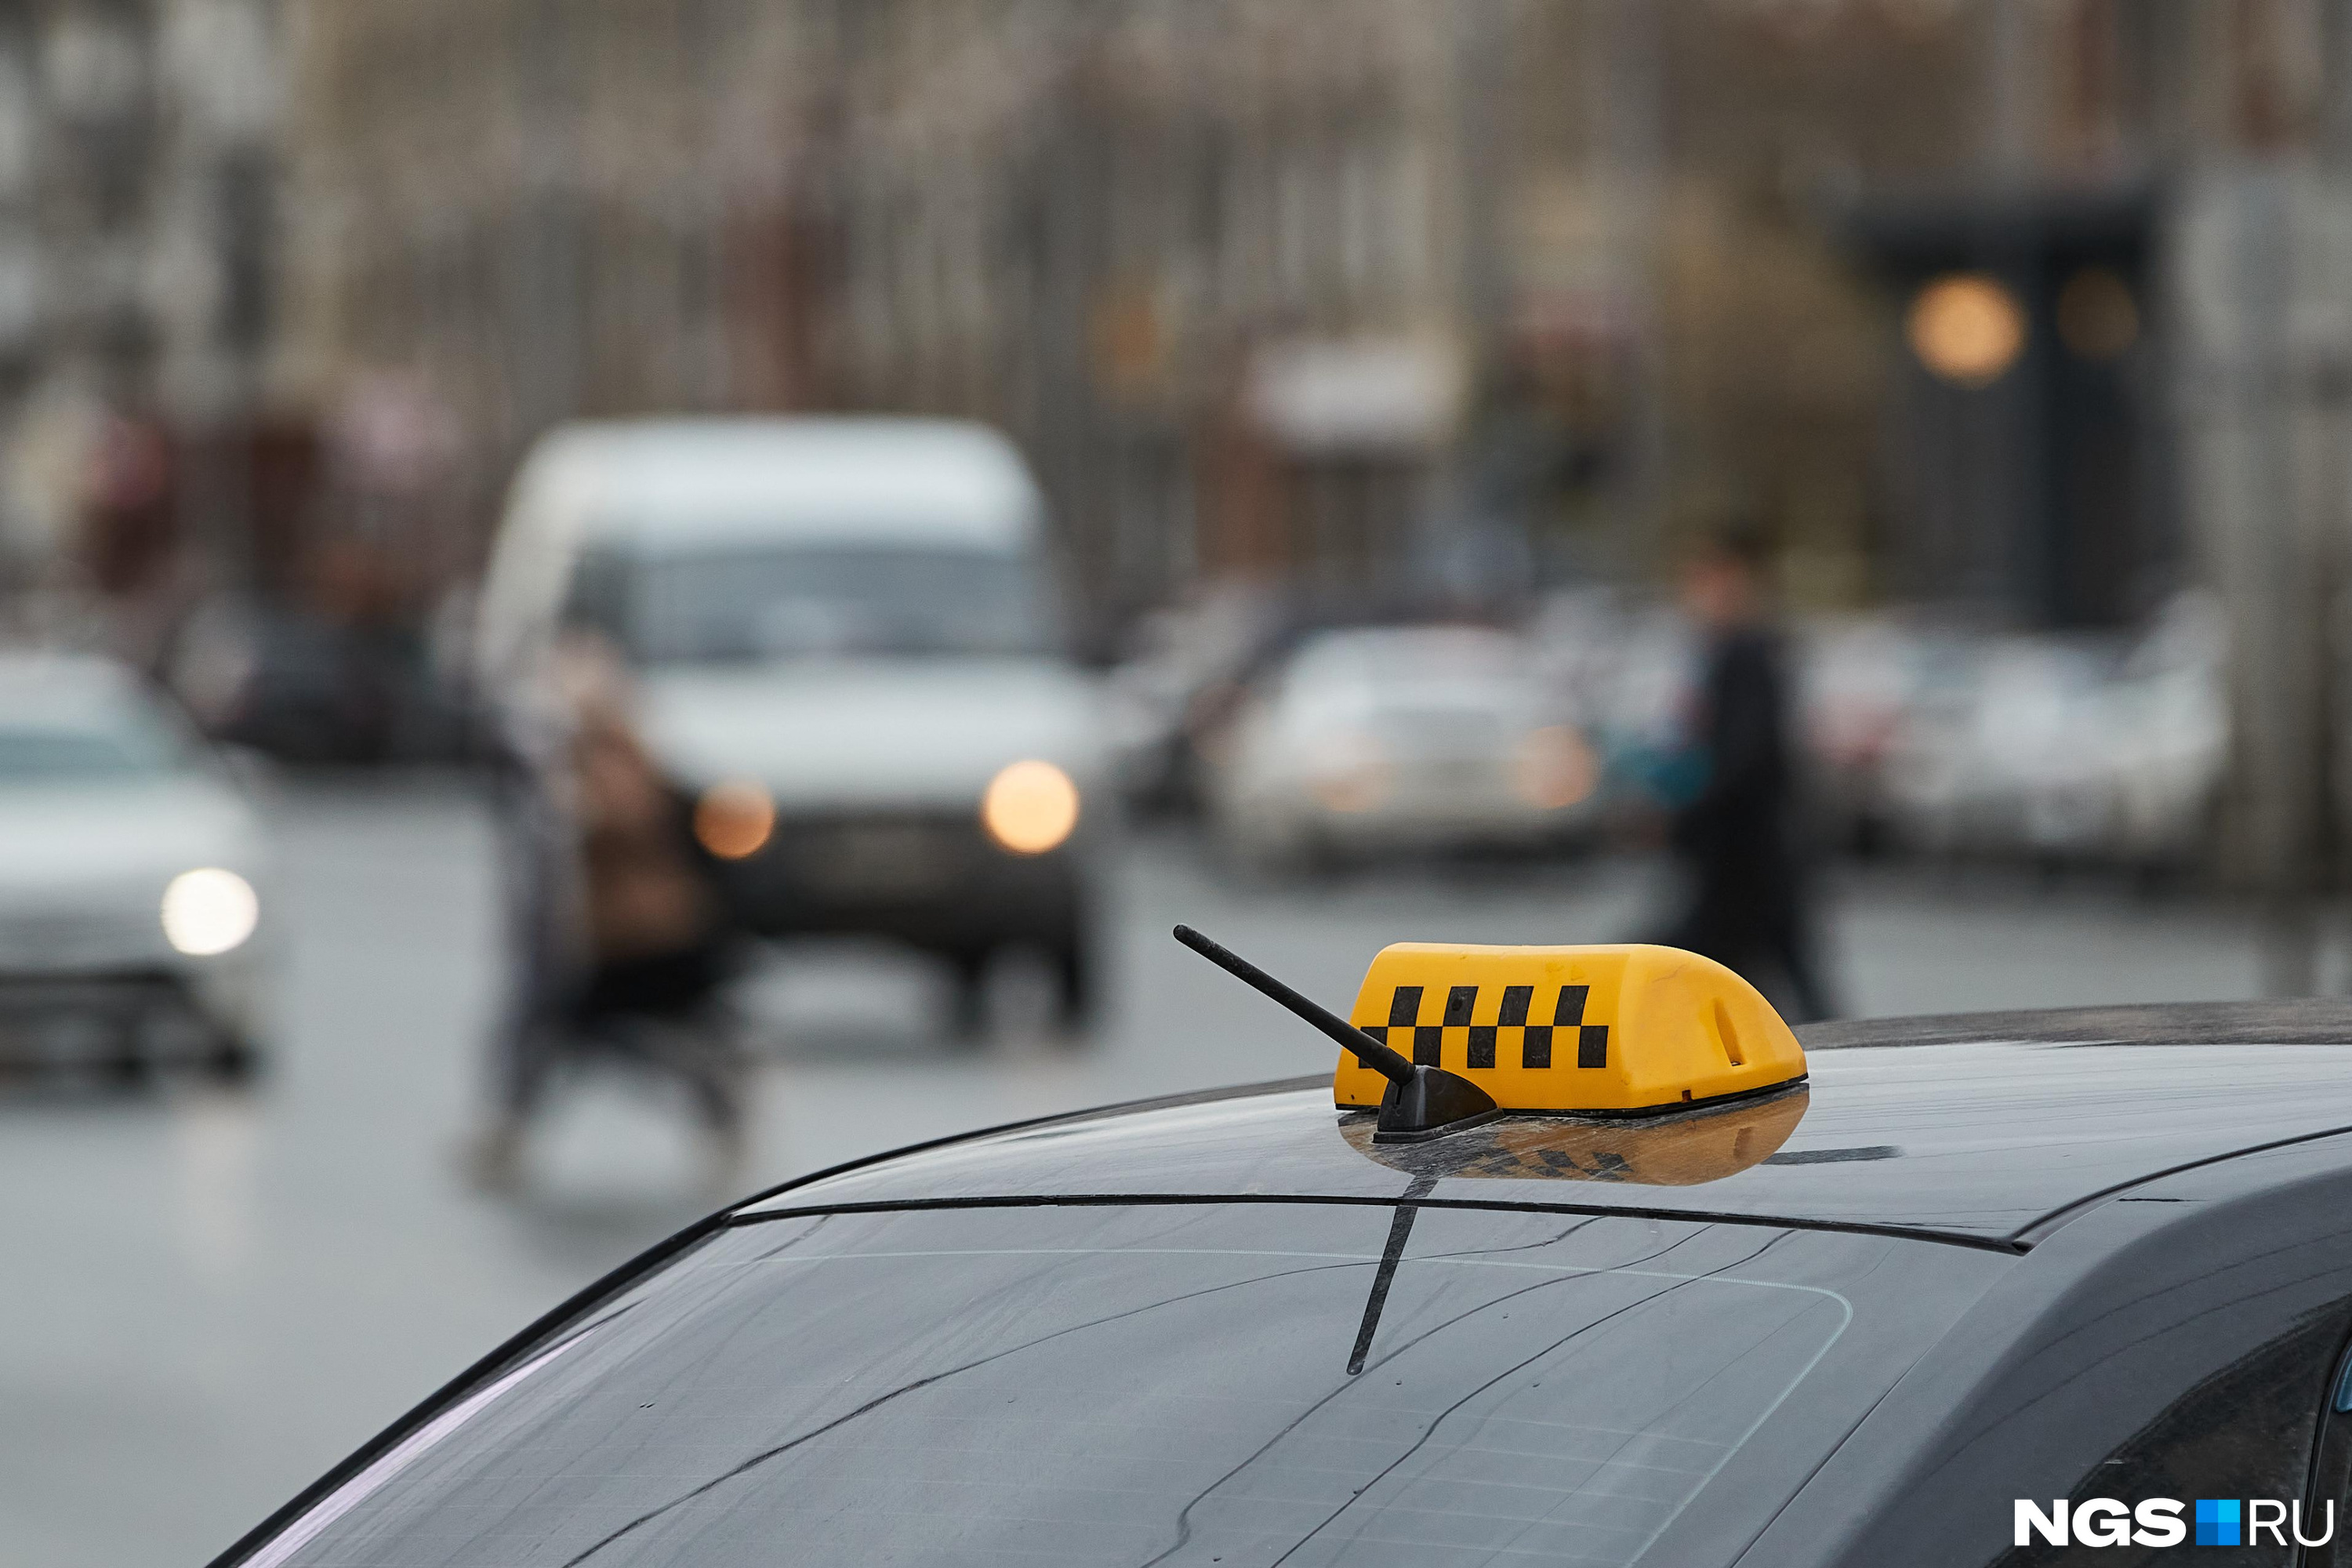 Полиция нашла таксиста «Максим», который похитил сертификат в Чите